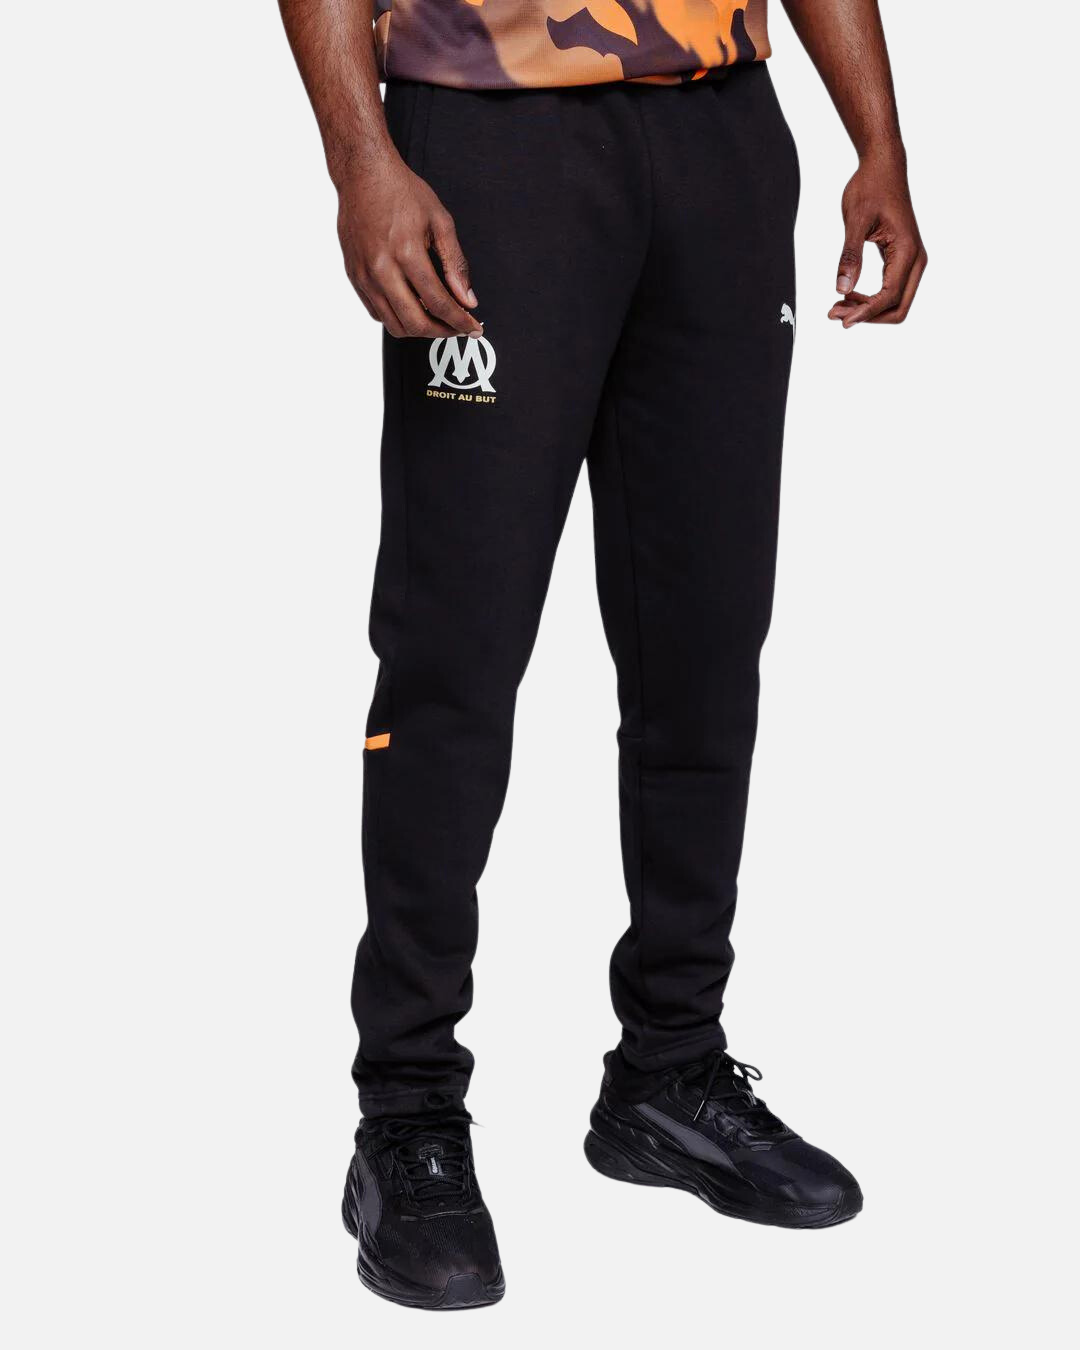 Pantalon de jogging Nike Team Club 20 pour homme